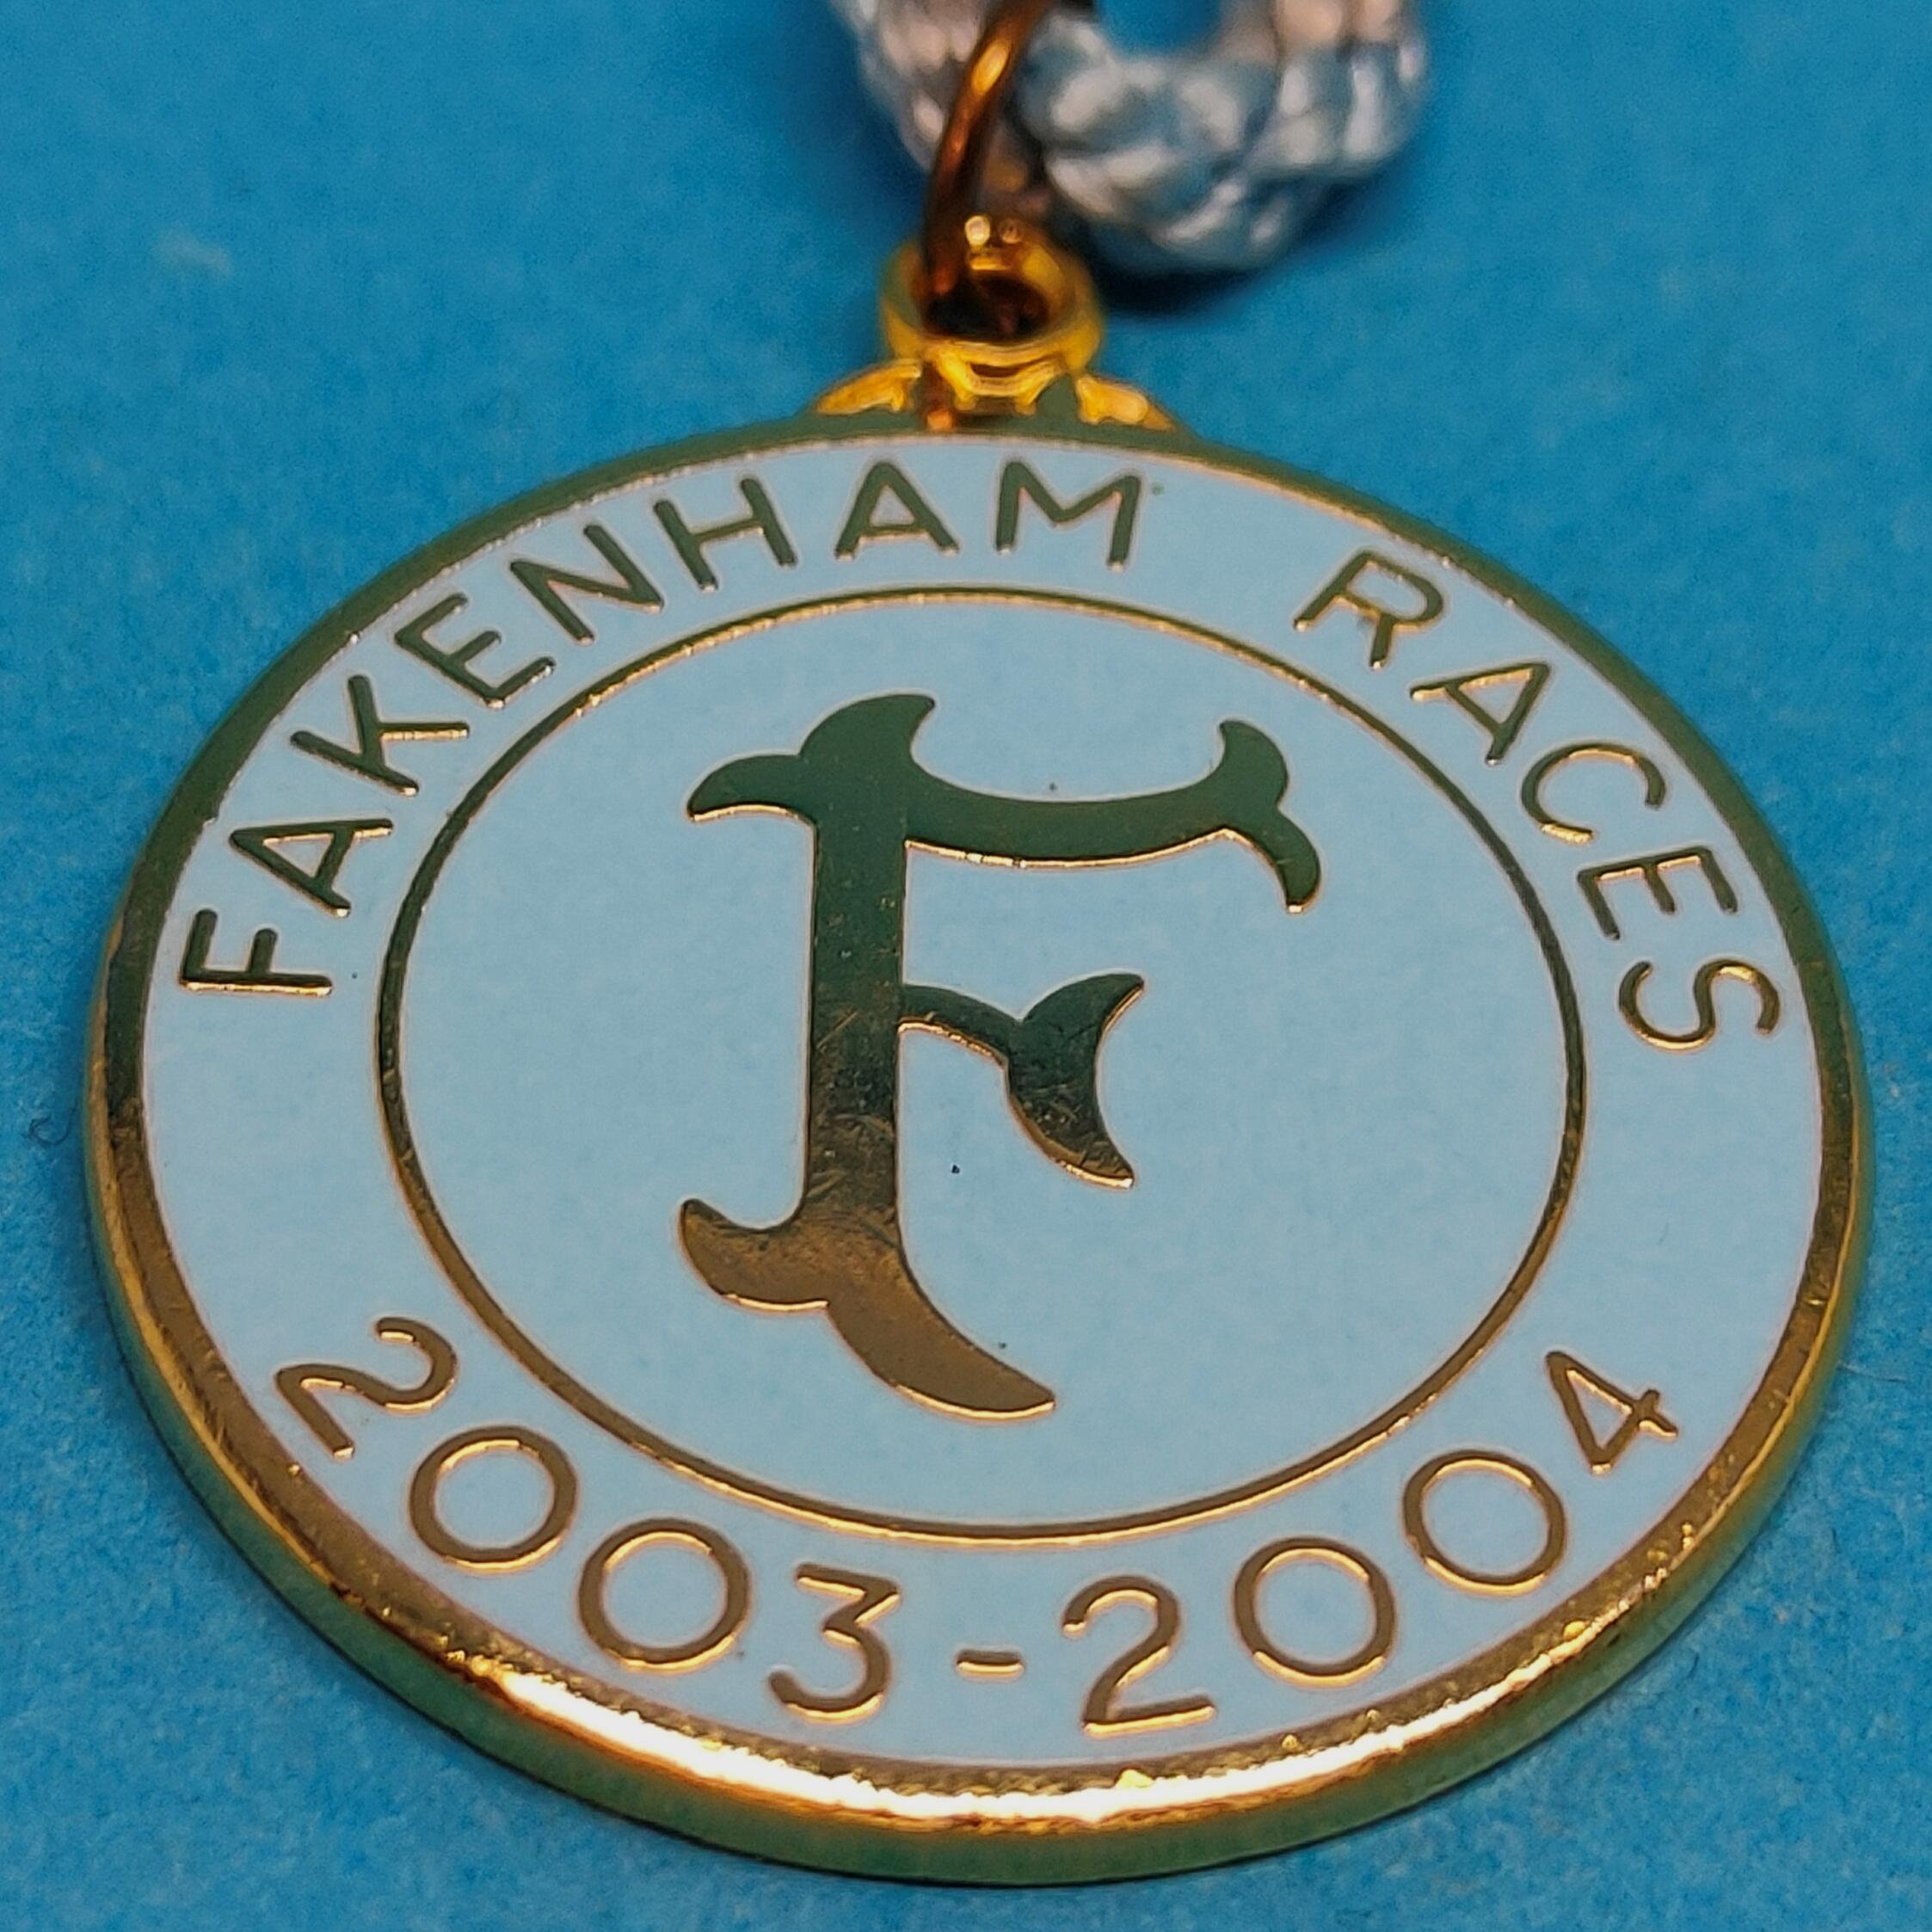 Fakenham 2003 / 2004